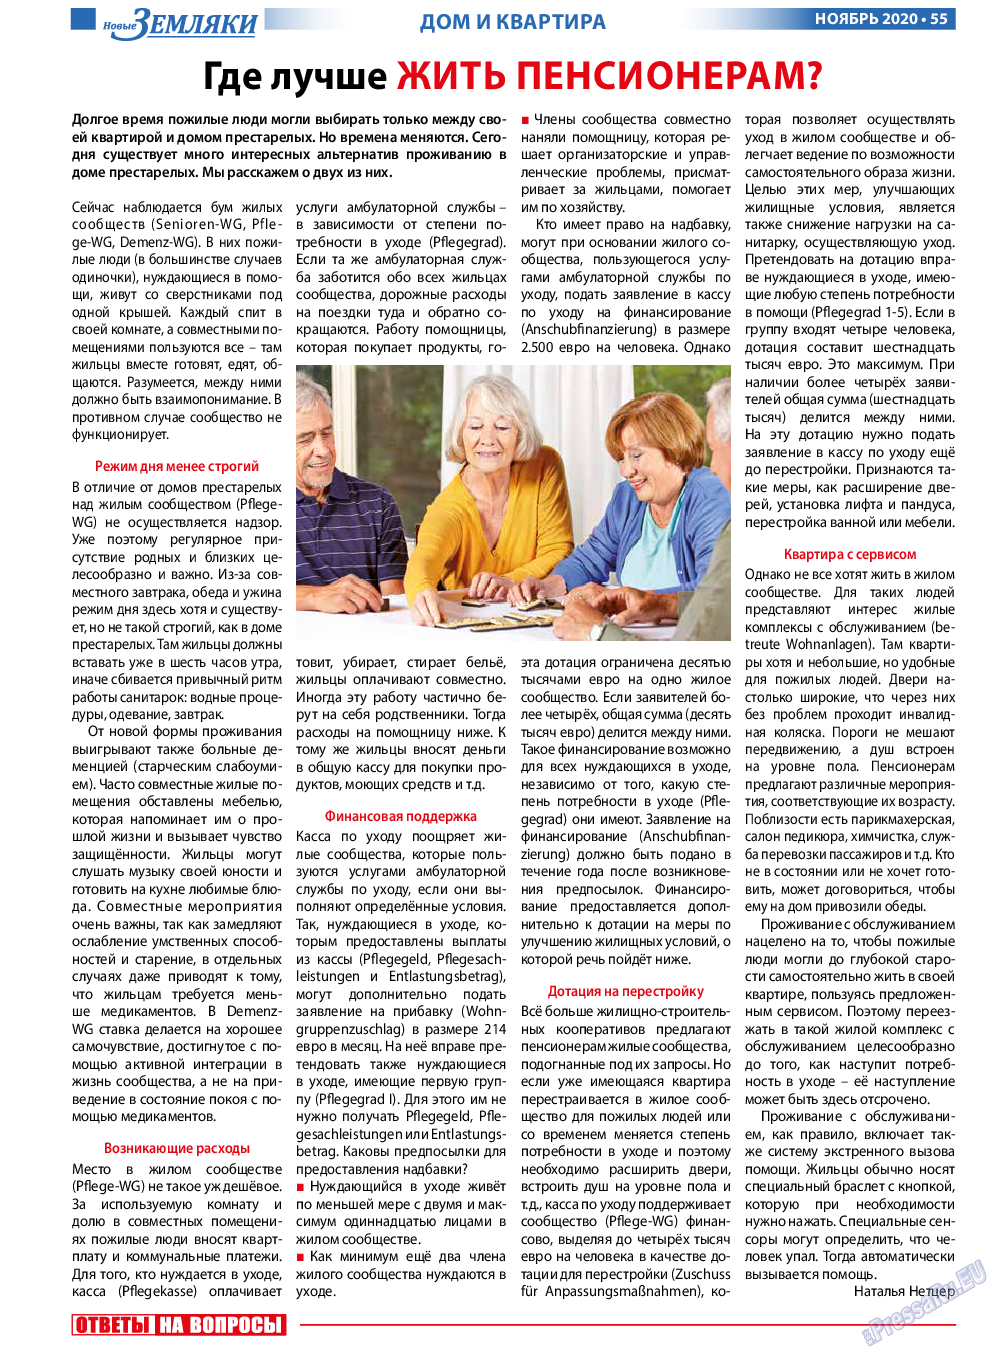 Новые Земляки, газета. 2020 №11 стр.55